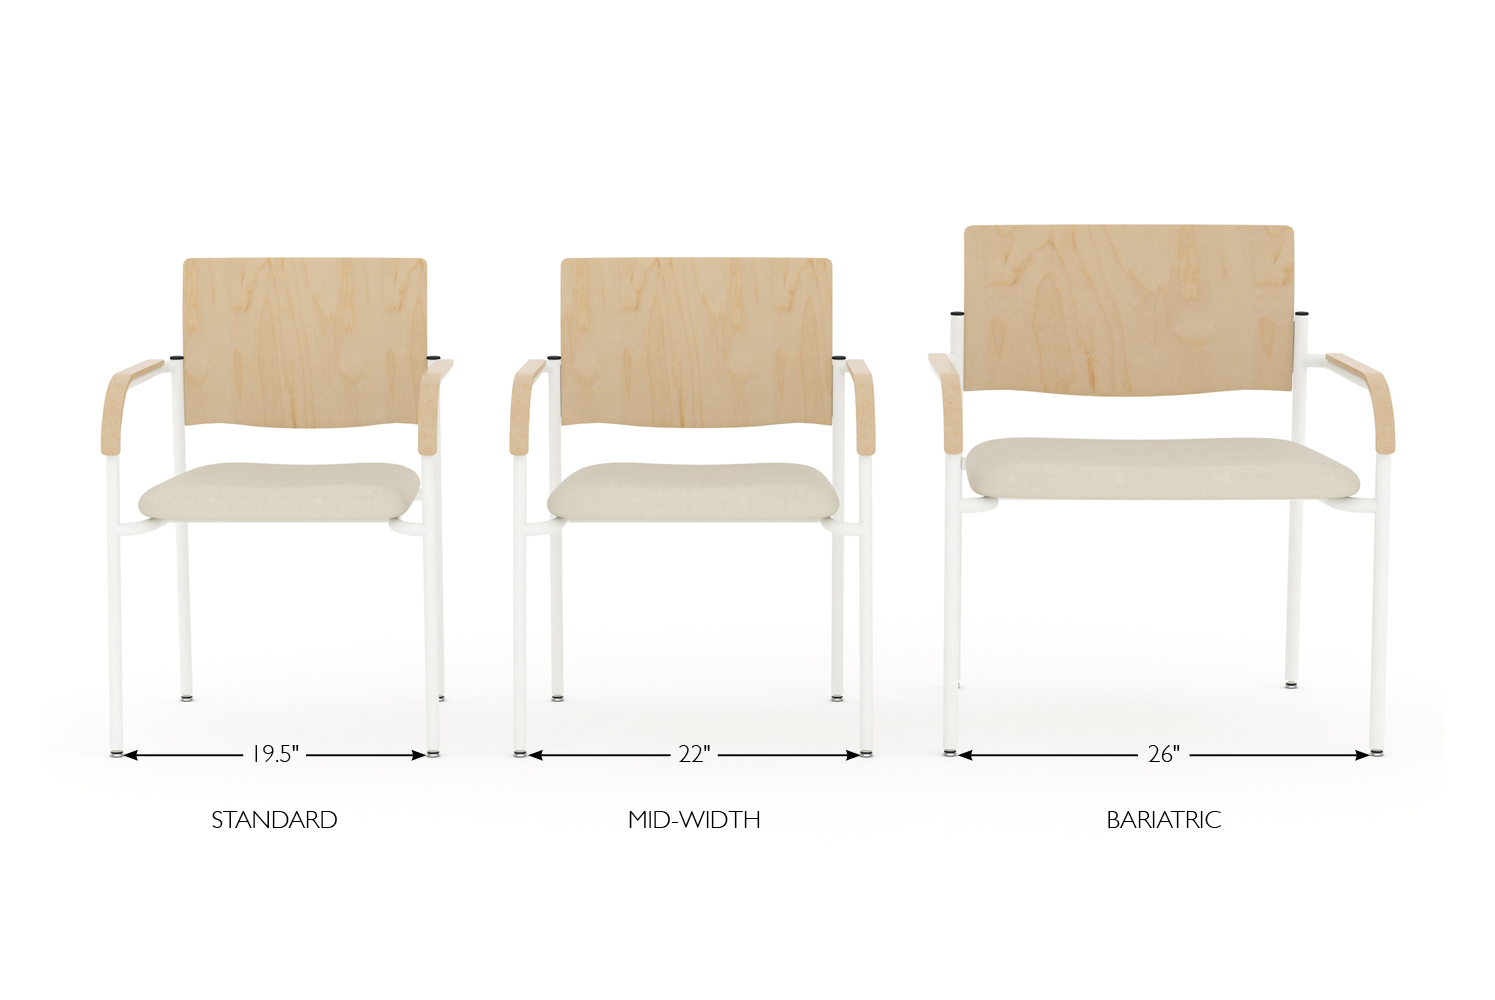 Teriana chairs, 3 widths